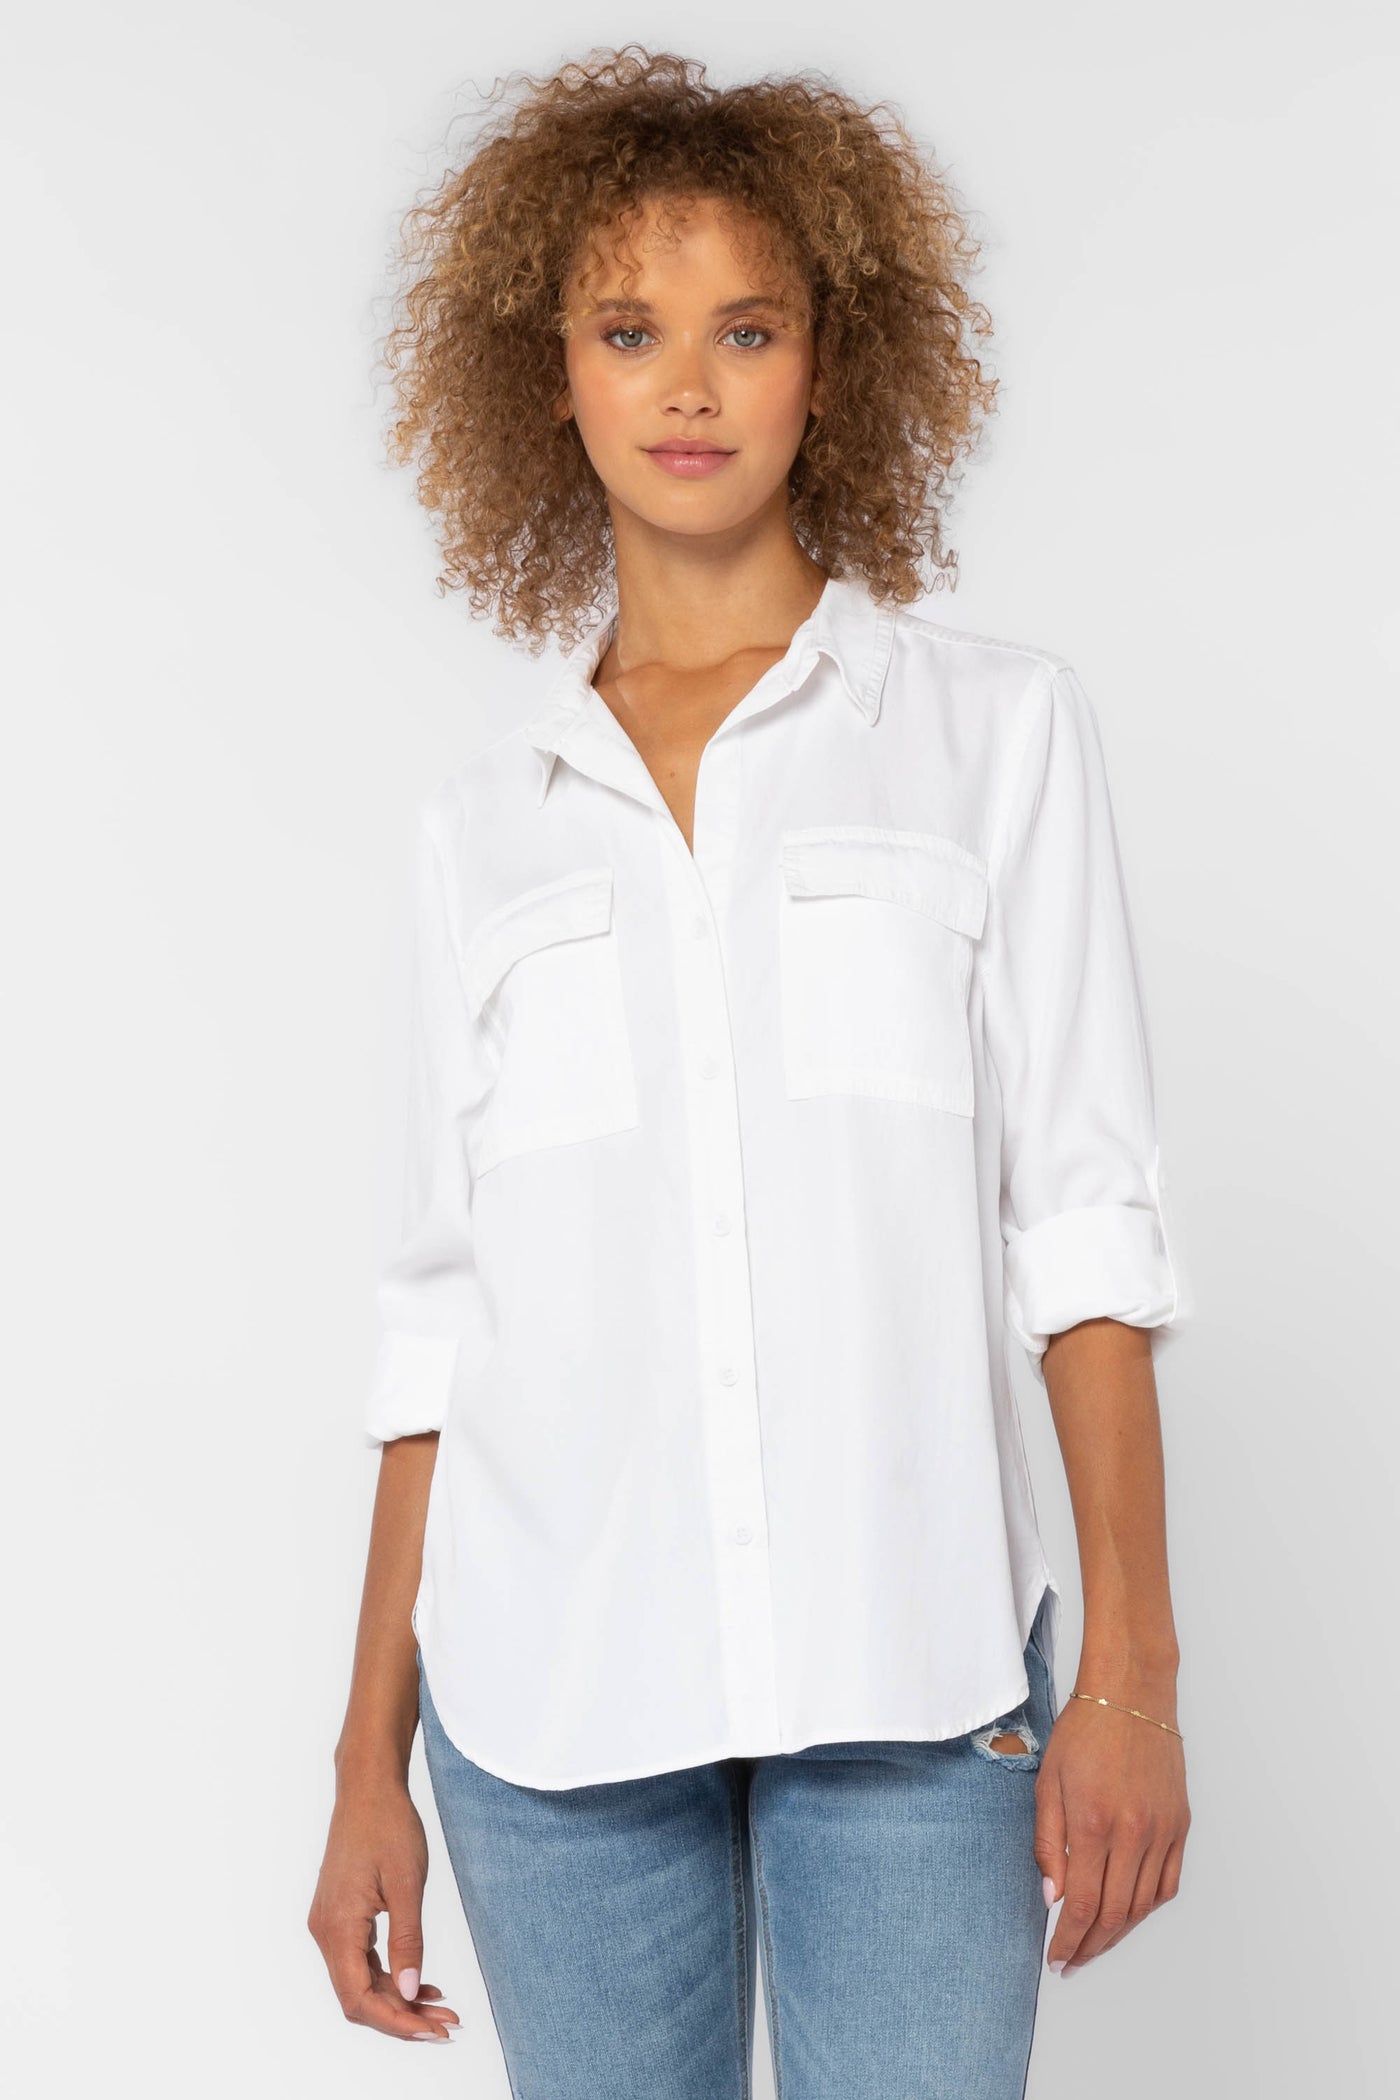 Talma White Shirt - Tops - Velvet Heart Clothing